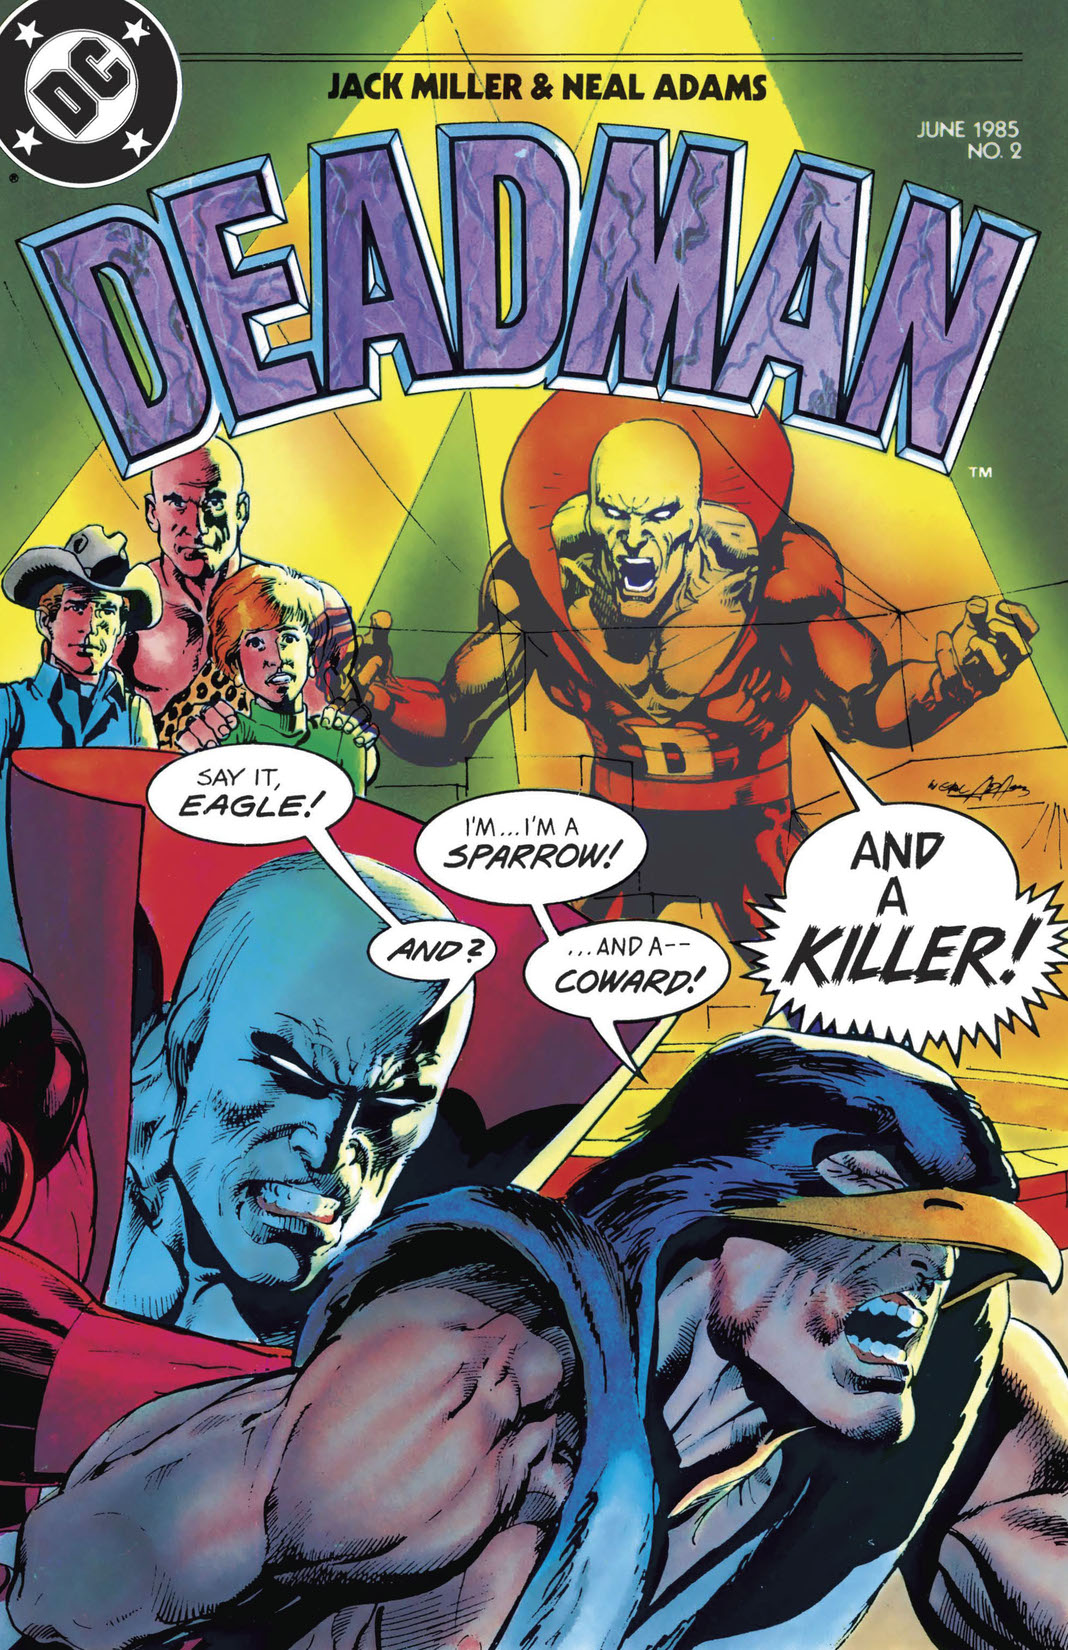 Deadman (1985-1985) #2 preview images